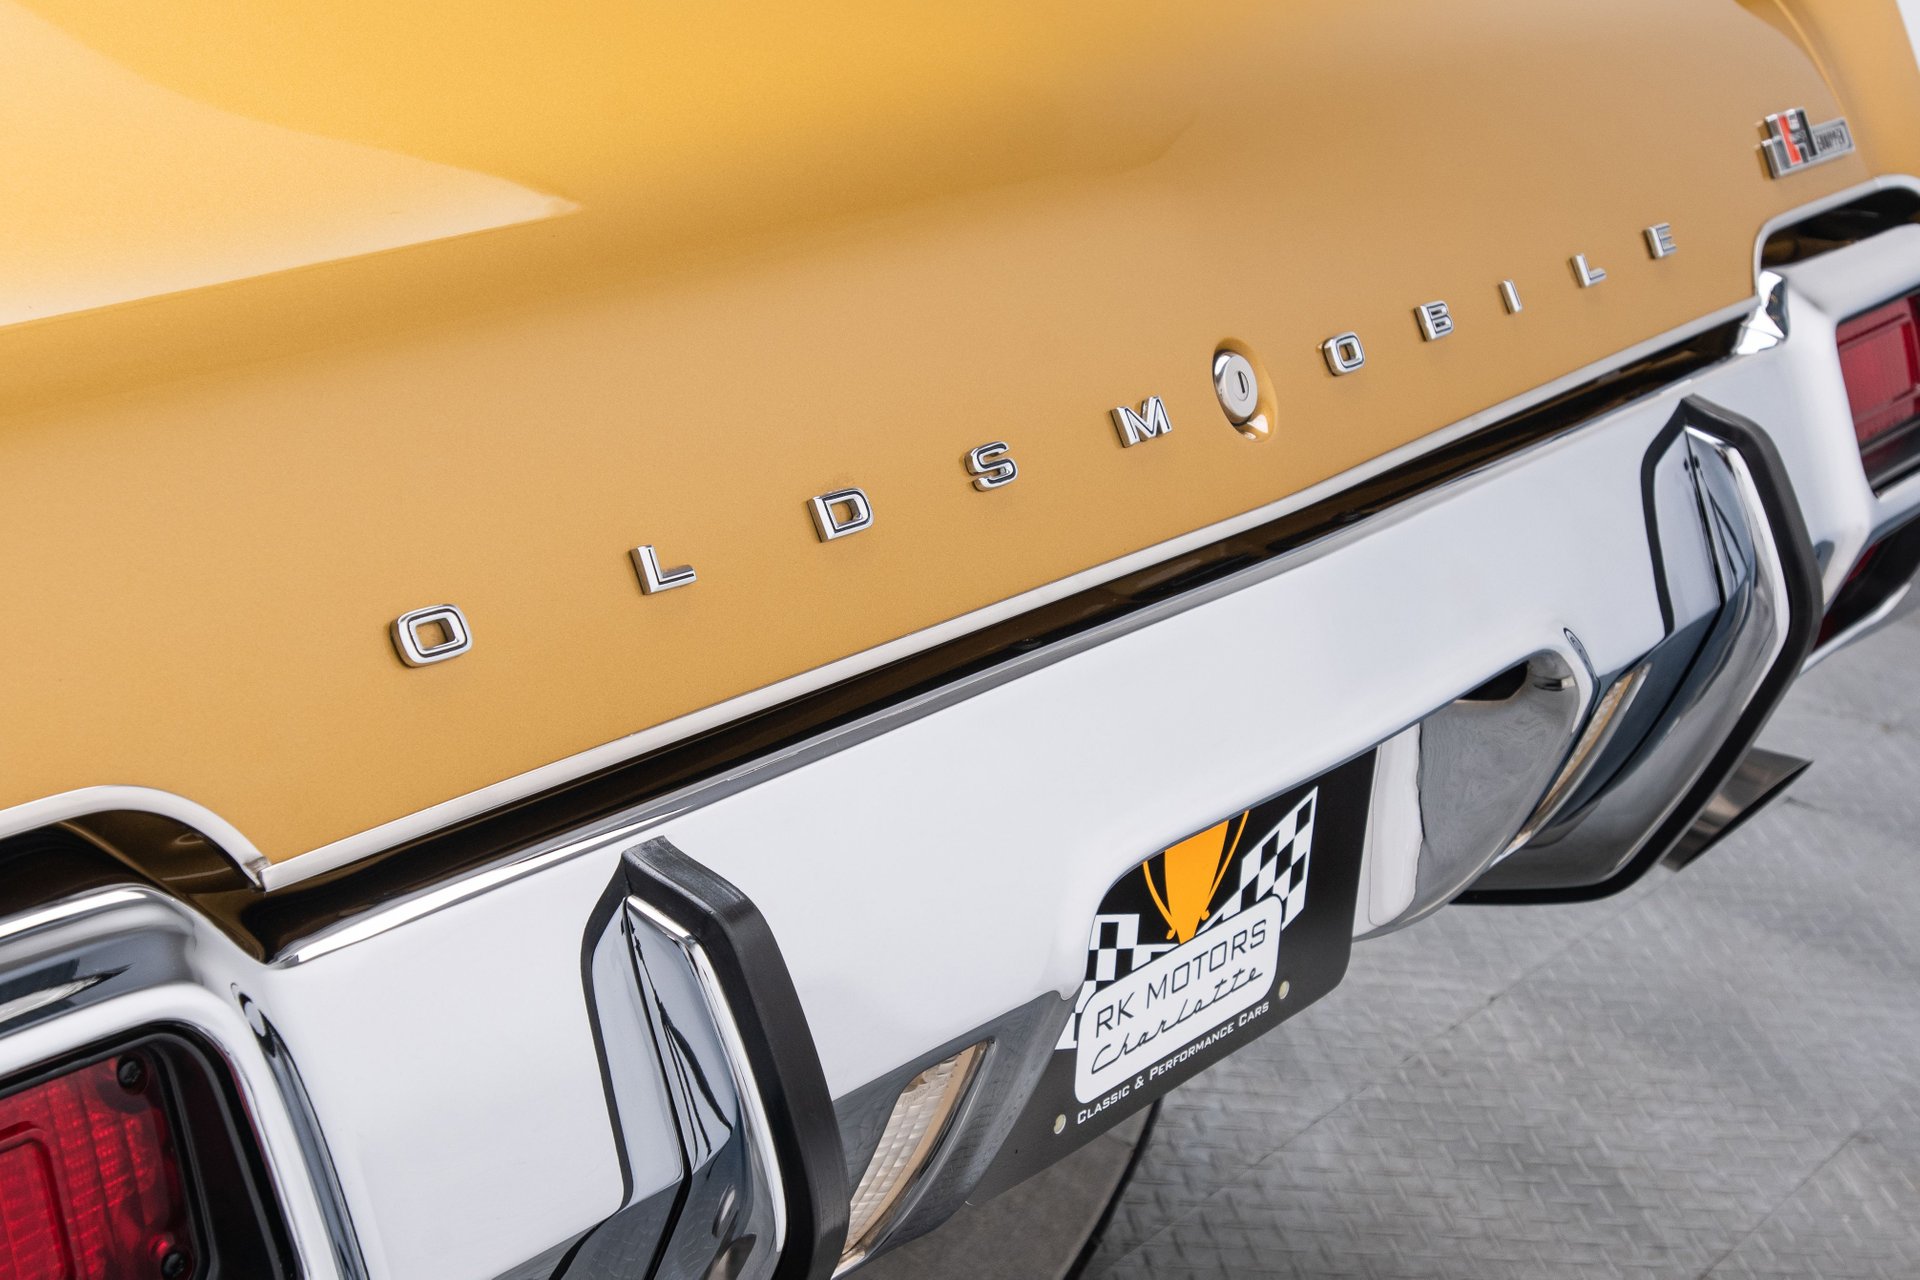 1971 oldsmobile cutlass supreme sx